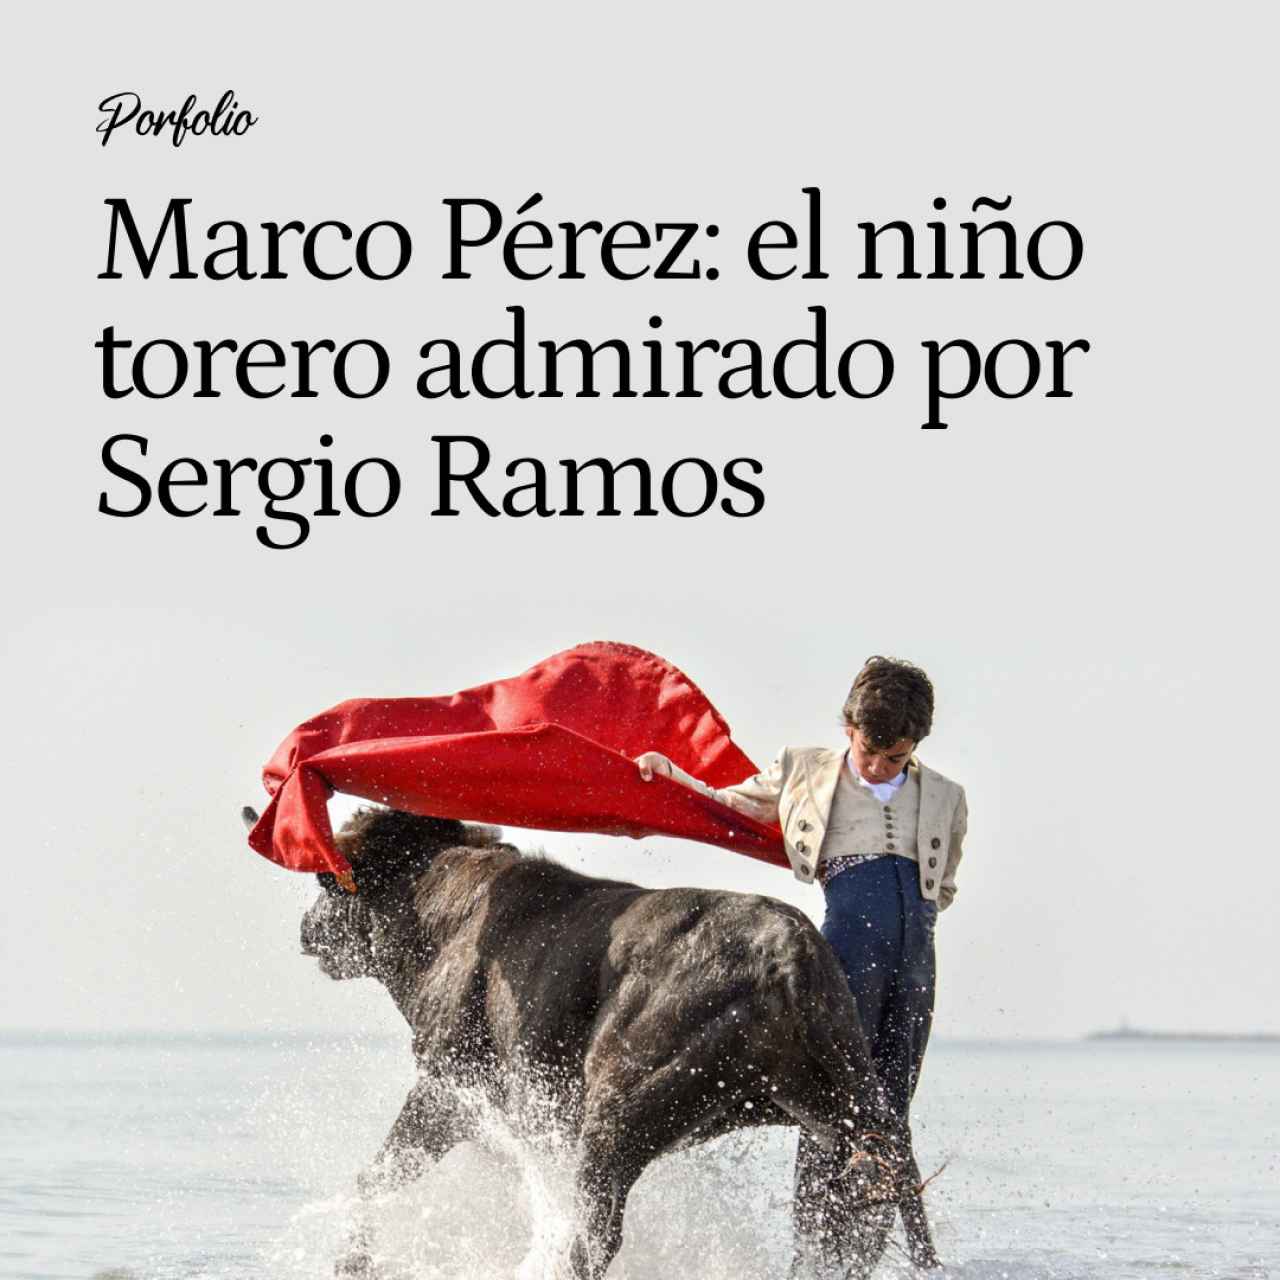 Marco Pérez, el niño prodigio del toreo que cortó un rabo en la Maestranza con 15 años y encandila a Sergio Ramos